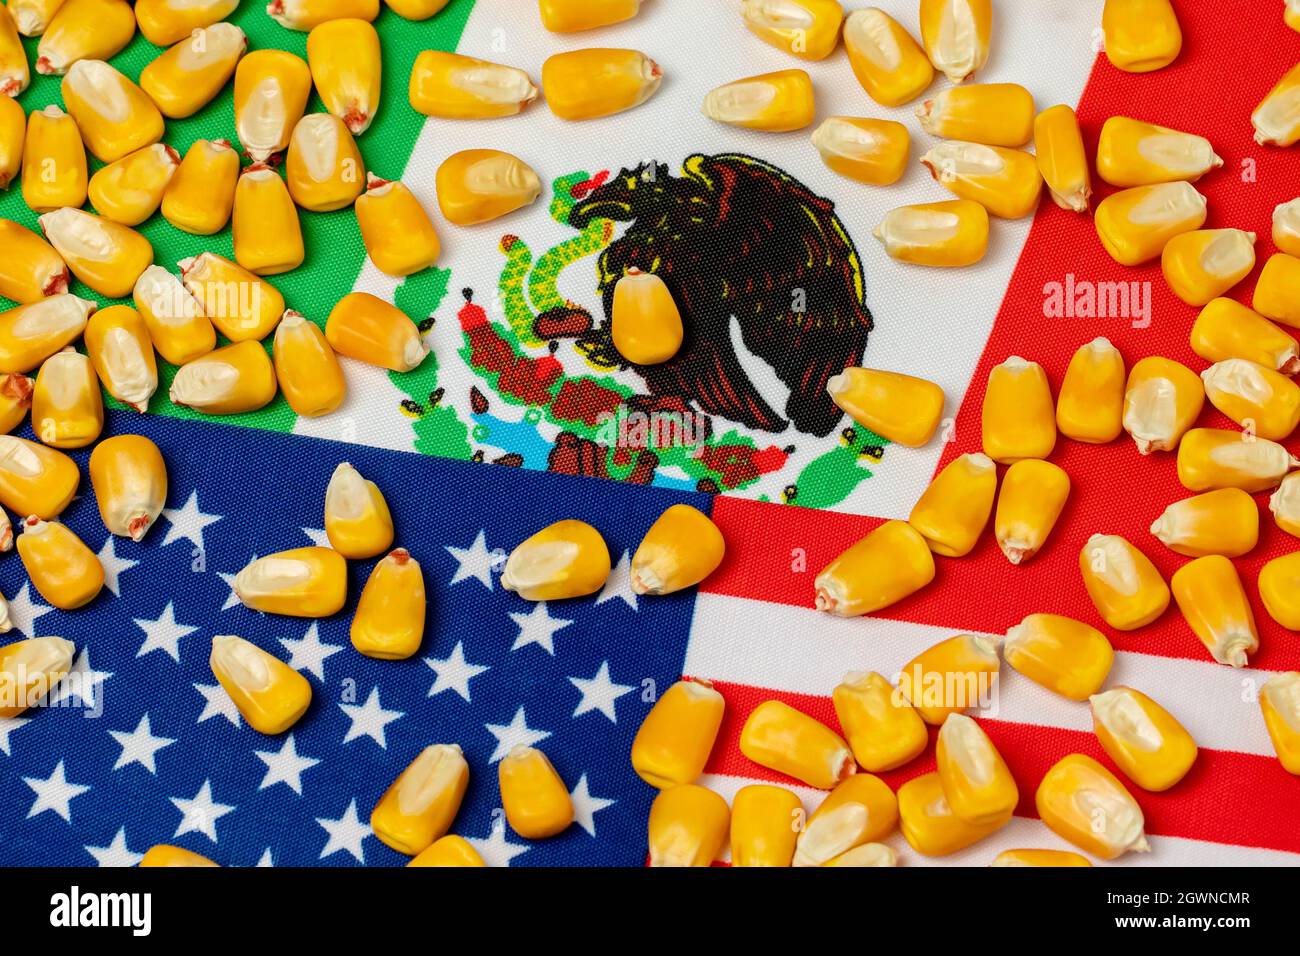 États-Unis d'Amérique, Mexique drapeaux et grains de maïs. Concept d'accord commercial sur l'agriculture, d'importations et d'exportations. Banque D'Images